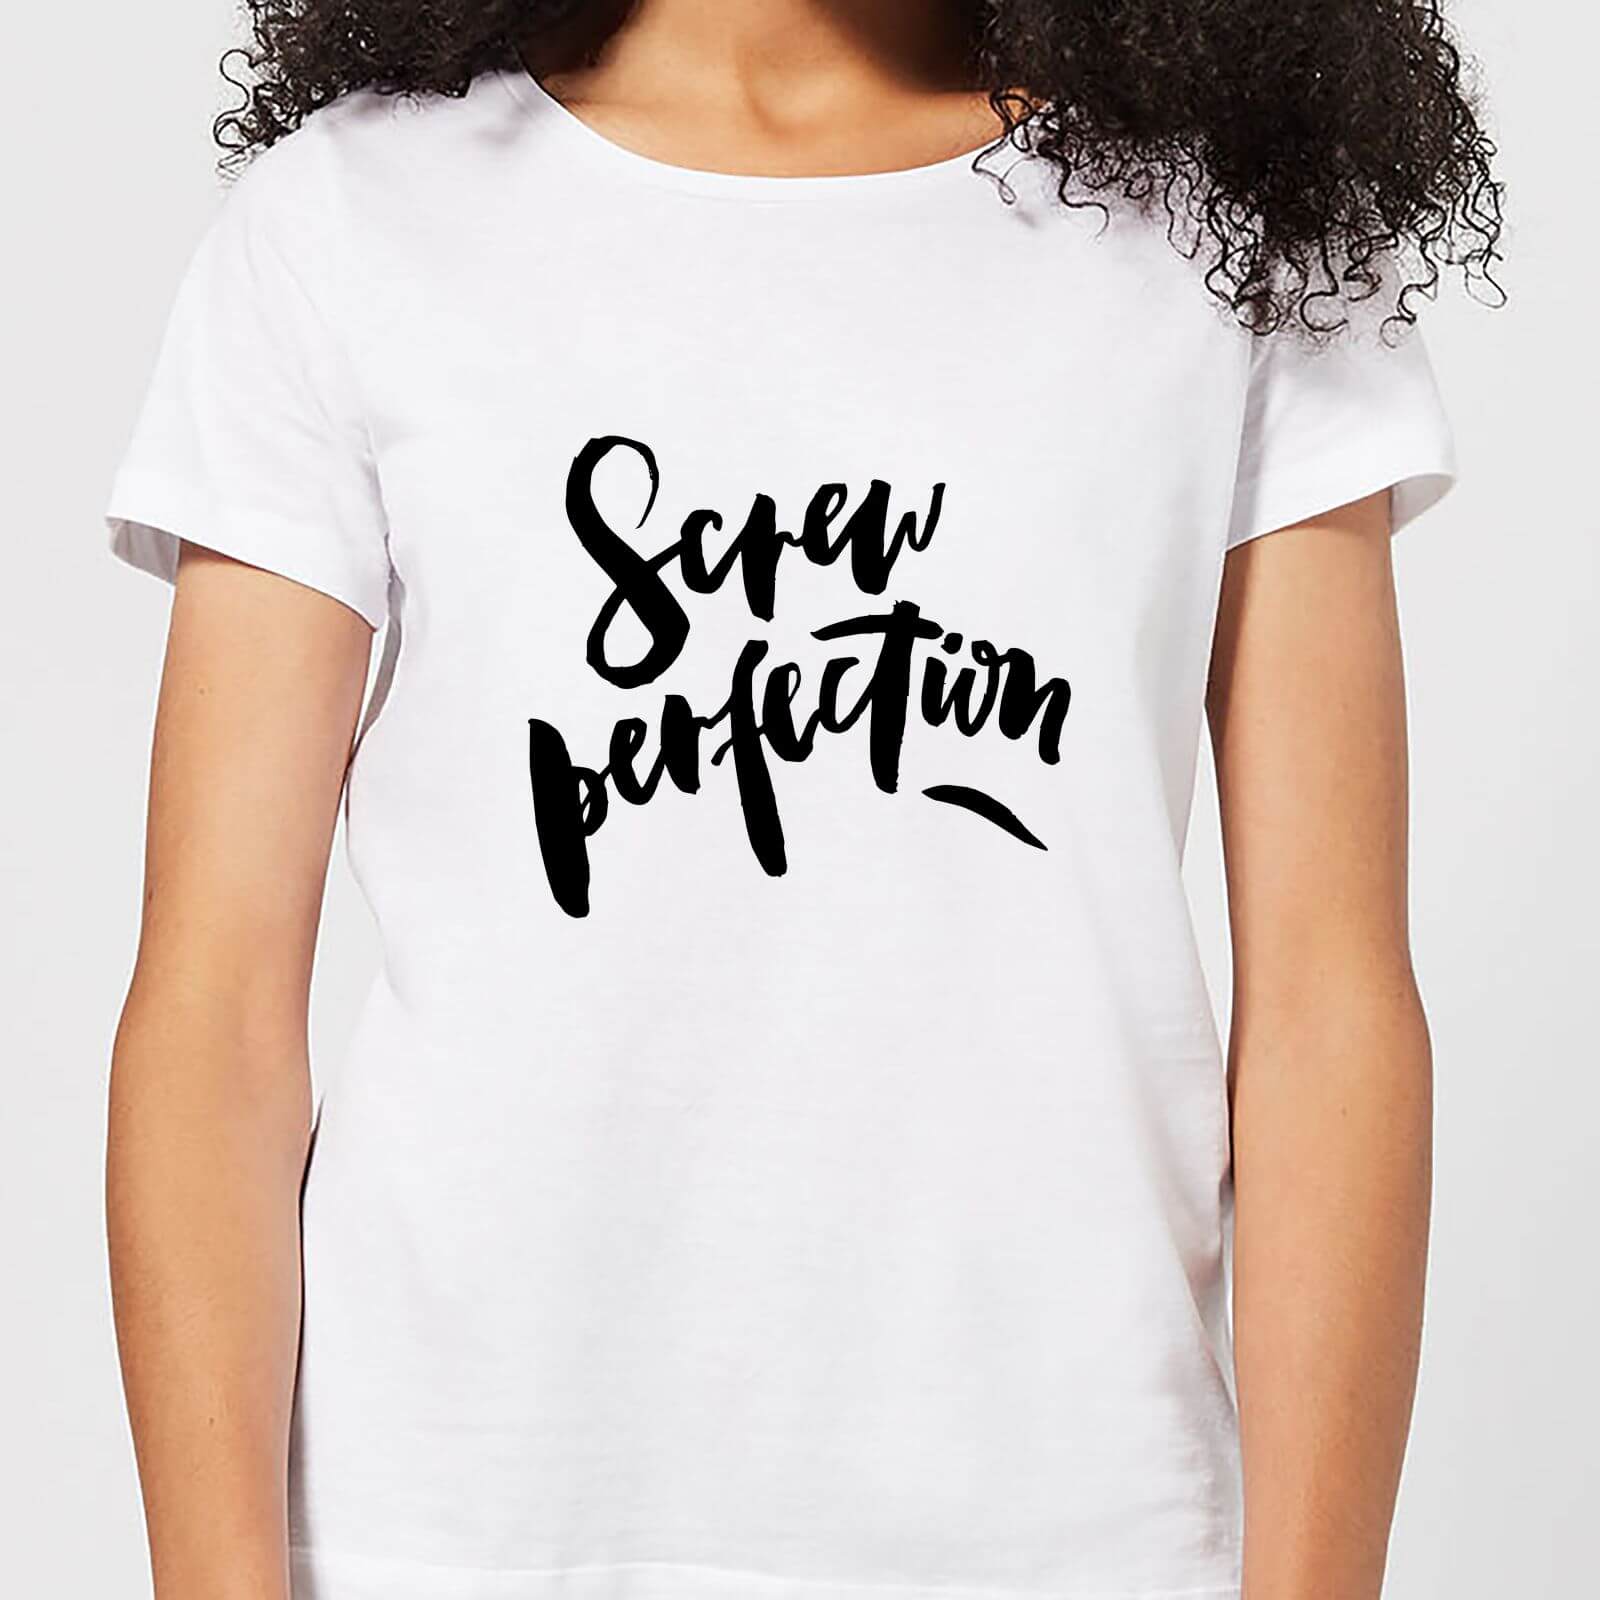 Screw Perfection Women's T-Shirt - White - XXL - White